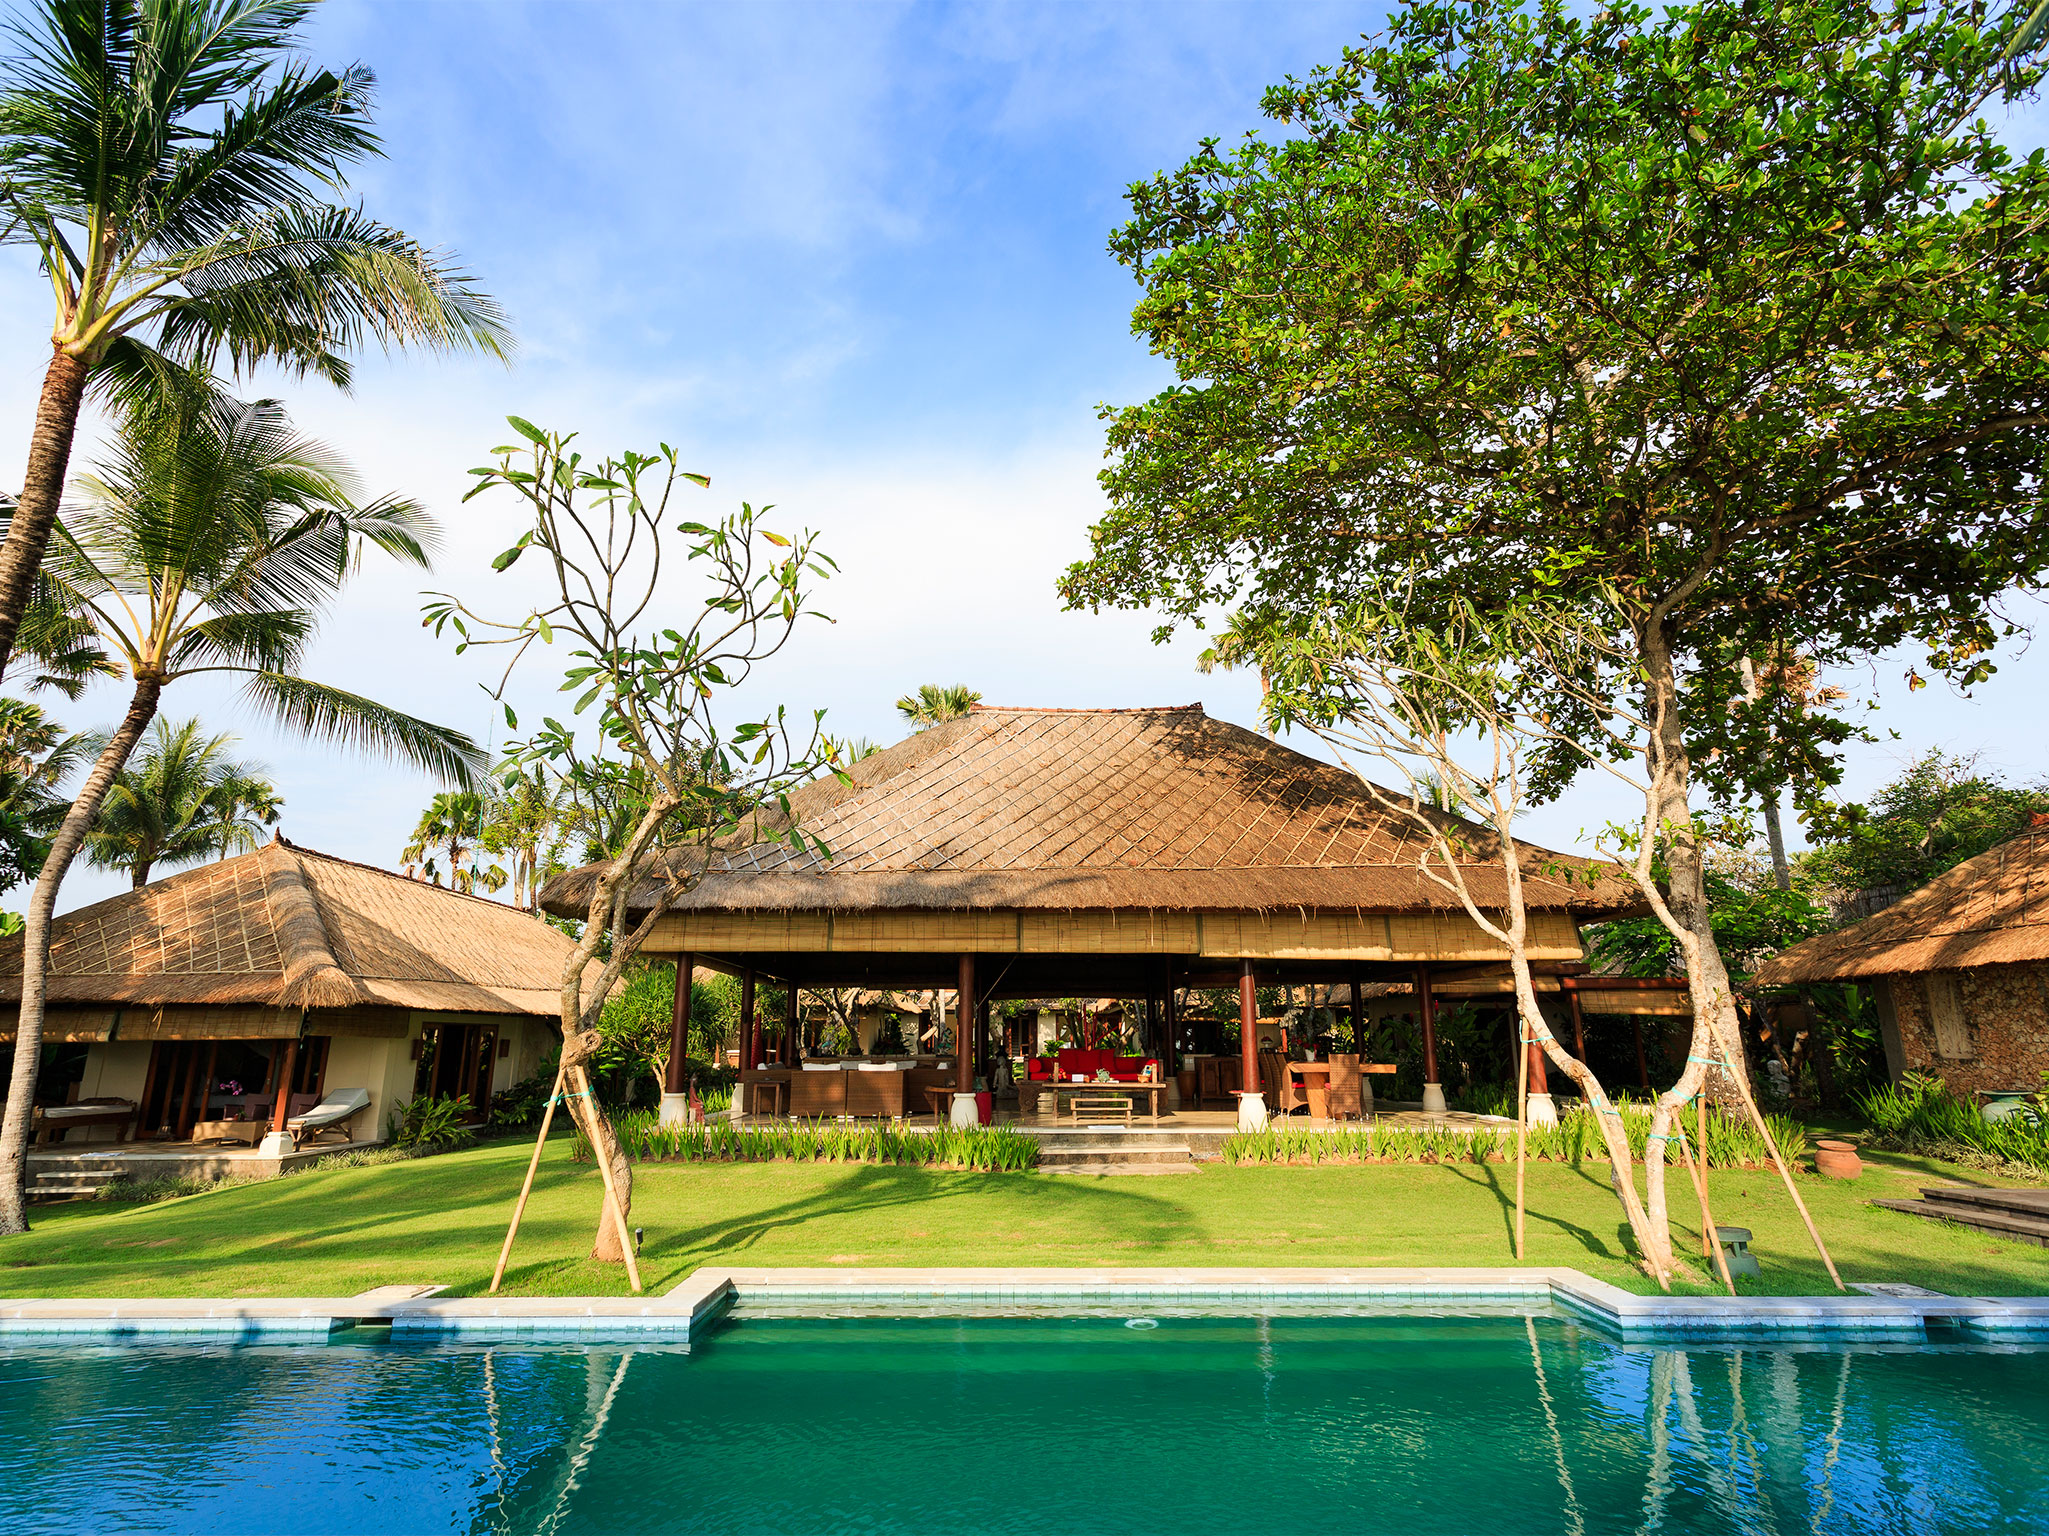 Villa Maridadi - Open pavilion Bali living - Villa Maridadi, Seseh-Tanah Lot, Bali